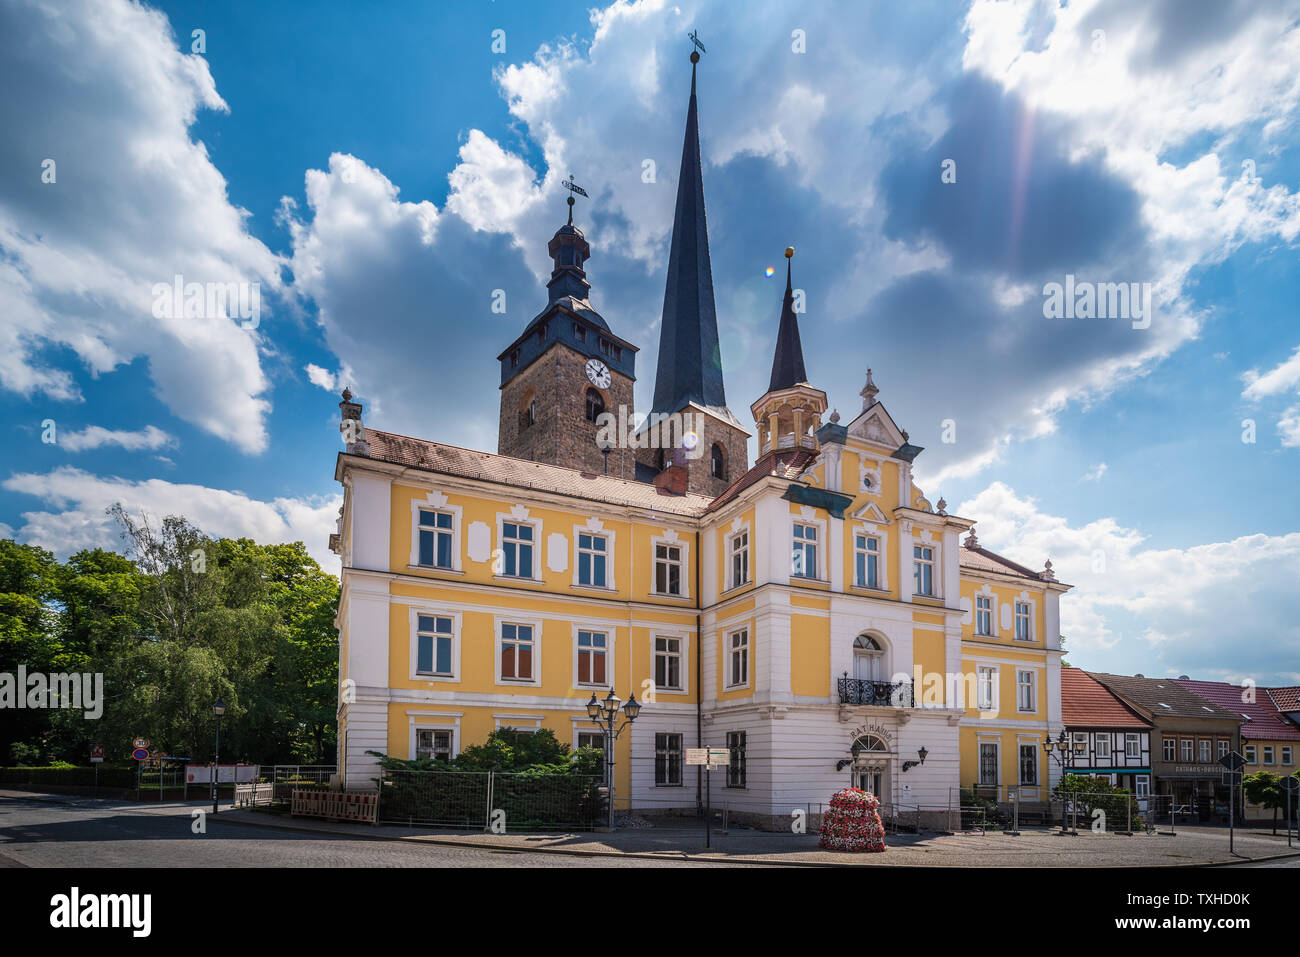 Historisches Rathaus und Kirche Unser Lieben Frauen, Burg bei Magdeburg, Sachsen-Anhalt, im Sommer Stockfoto